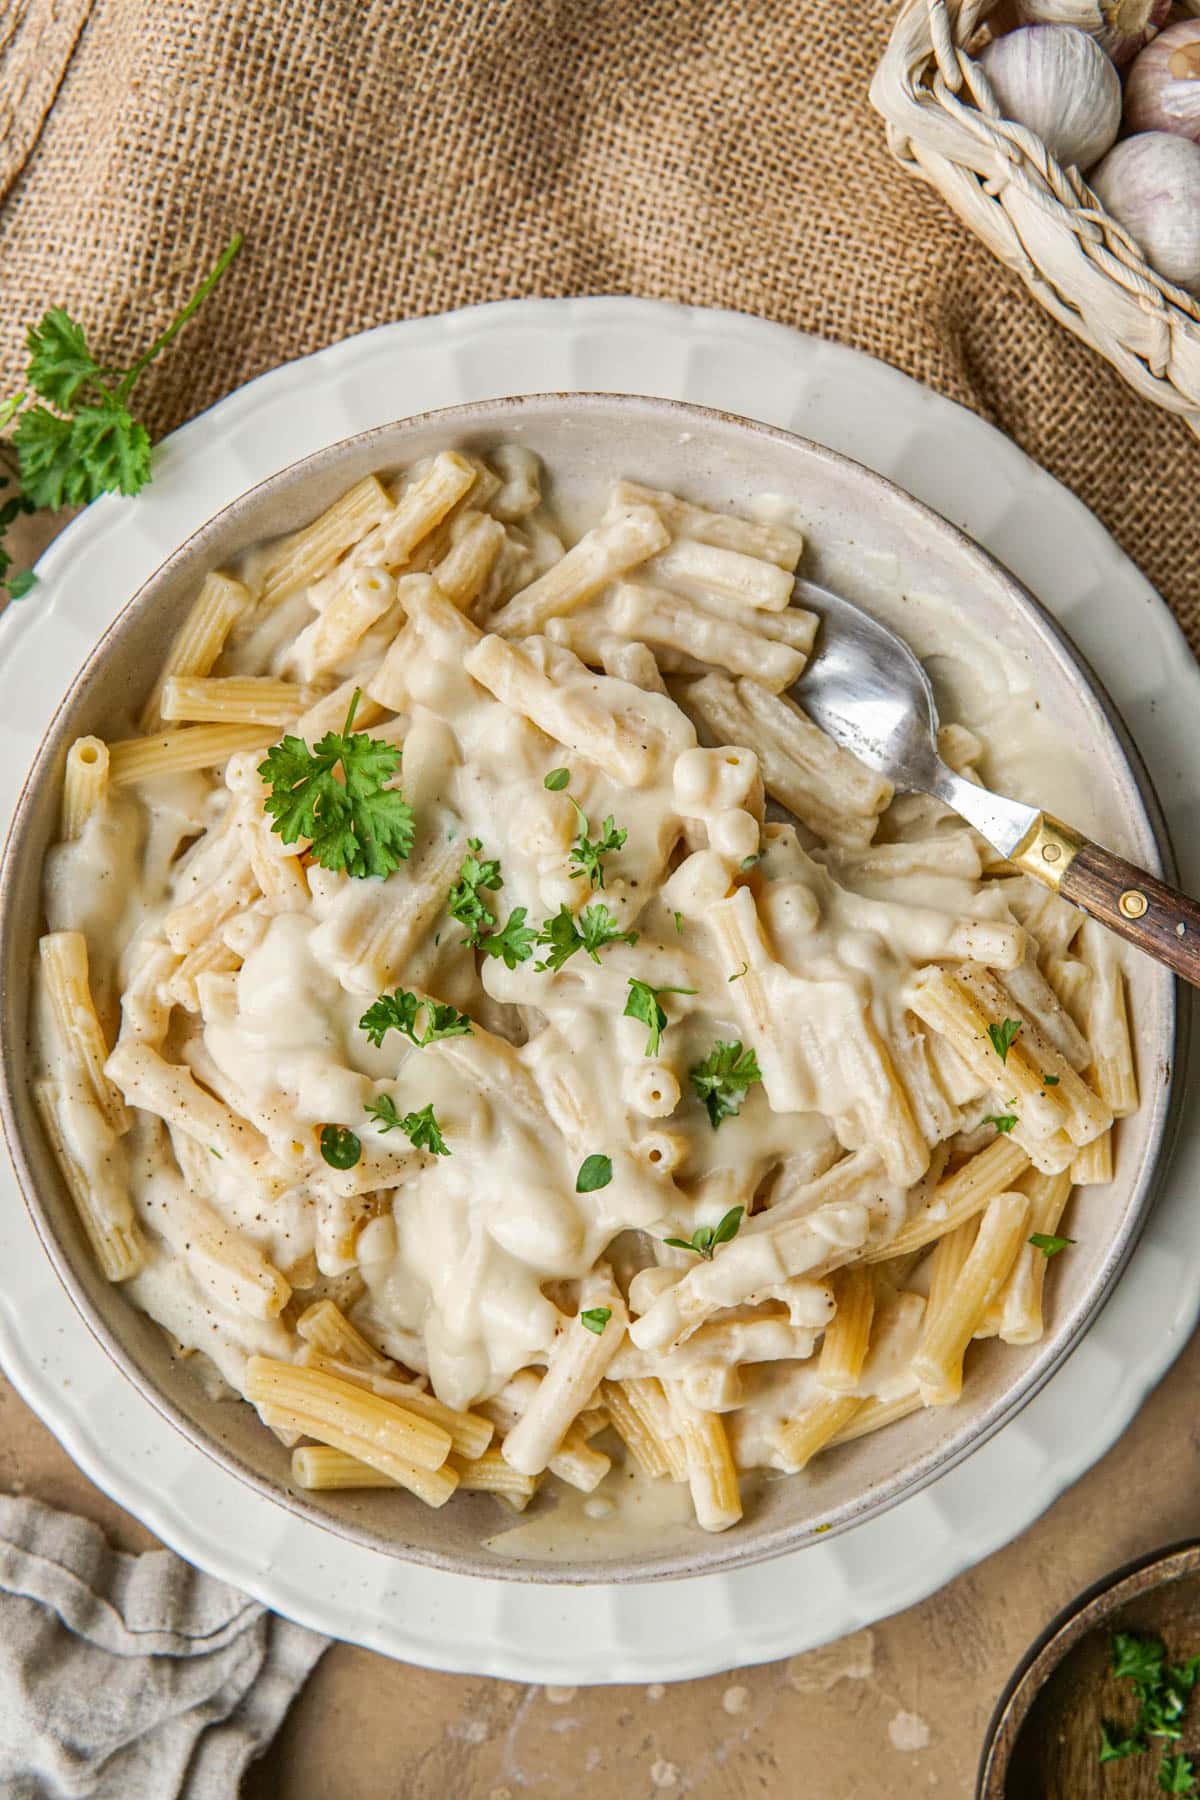 Recept voor vegan pasta alfredo met bloemkool